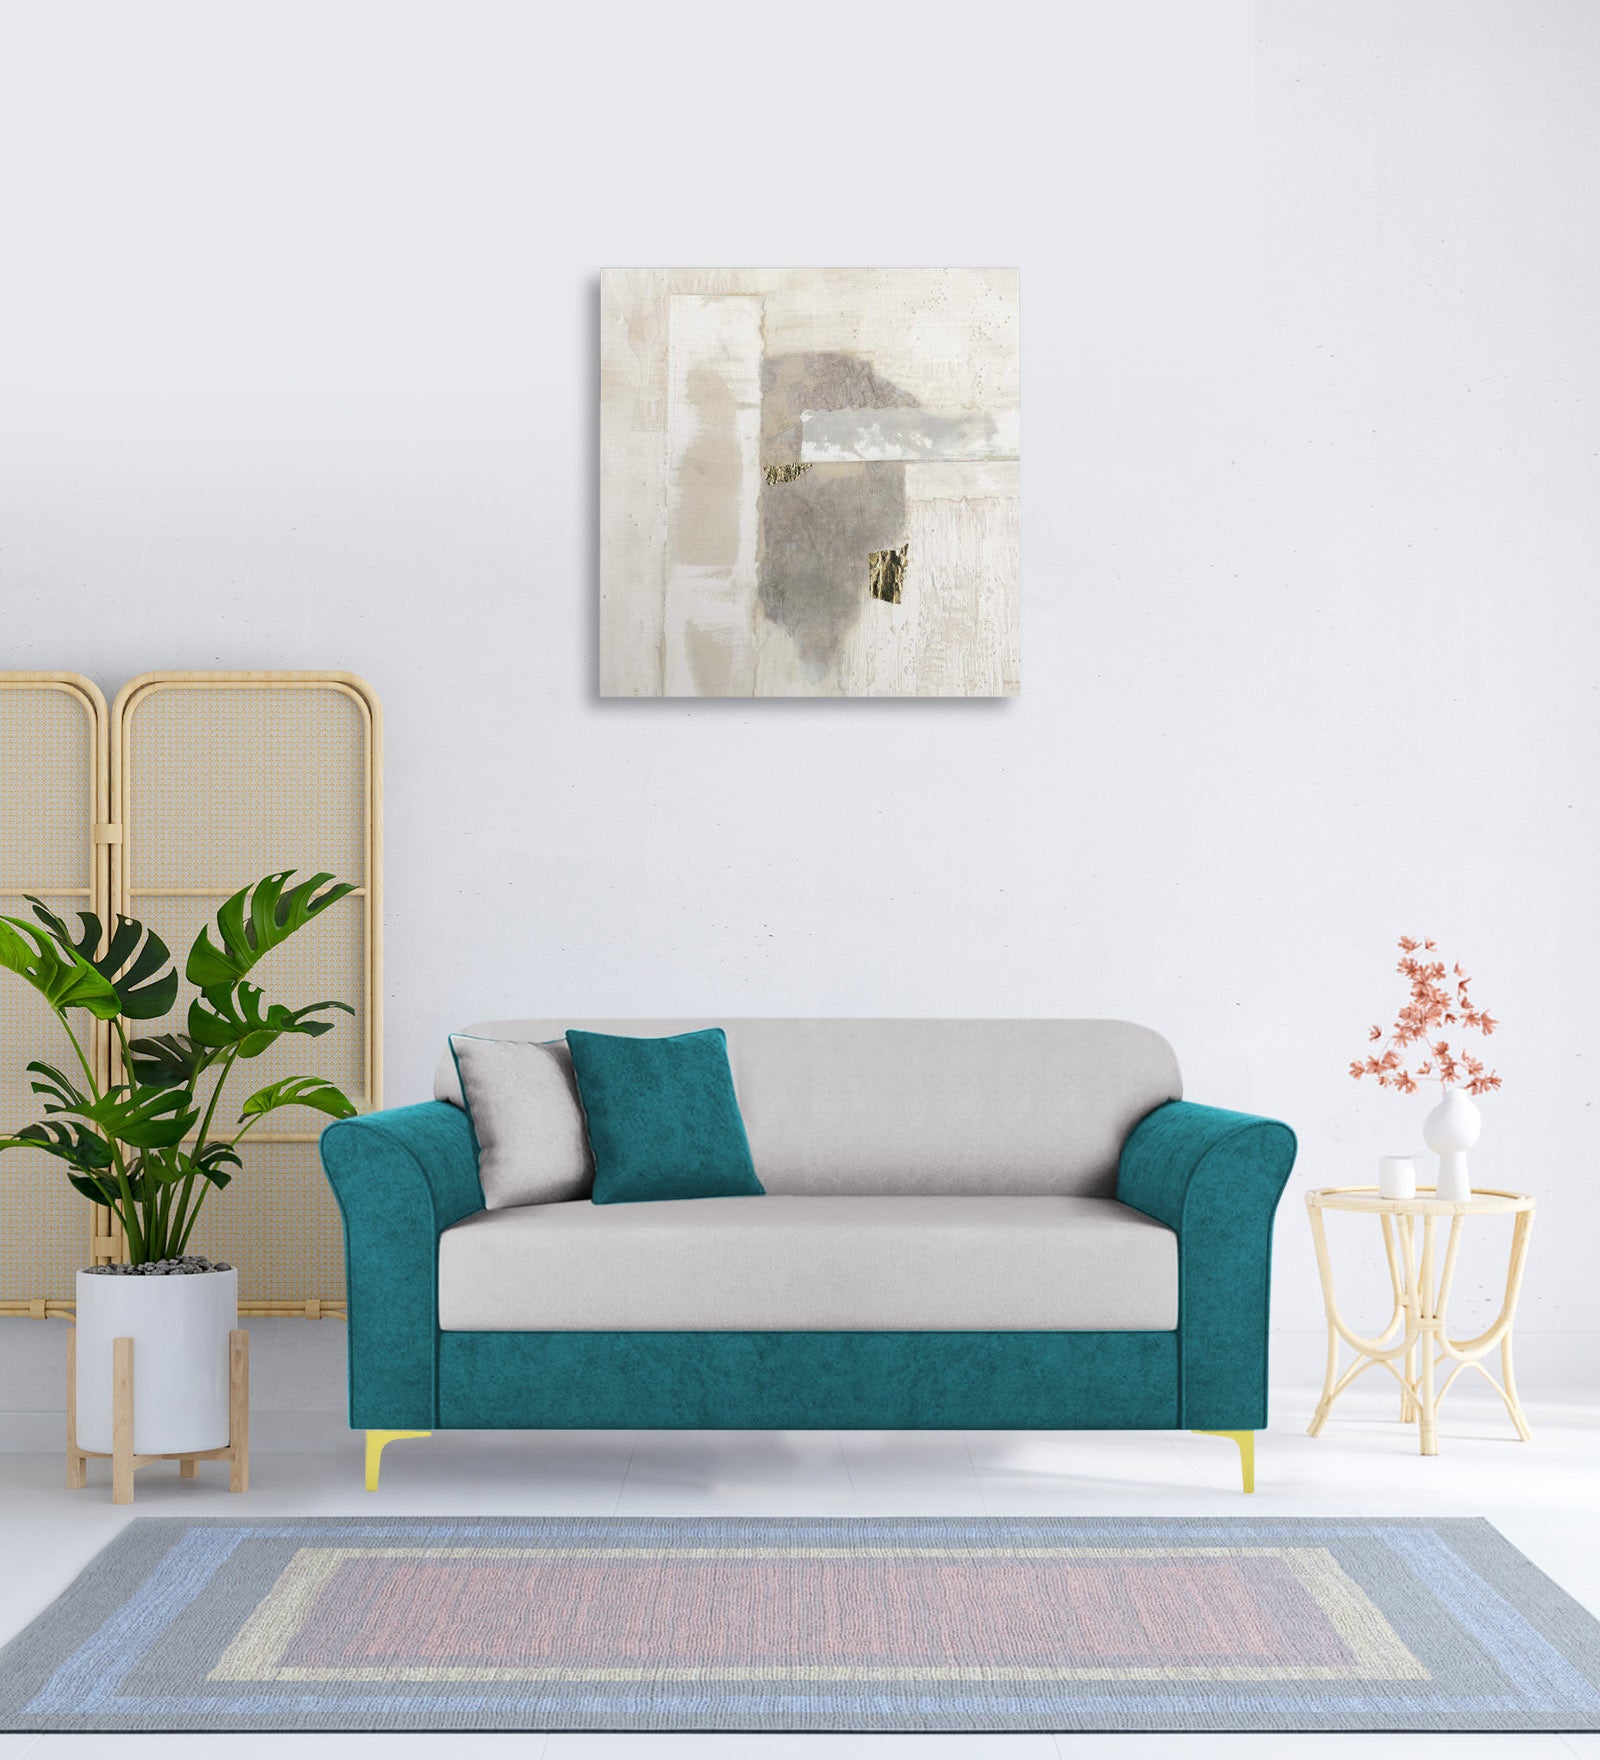 Jordan Velvet 2 Seater Sofa in PineGreen-Concreate Grey Colour